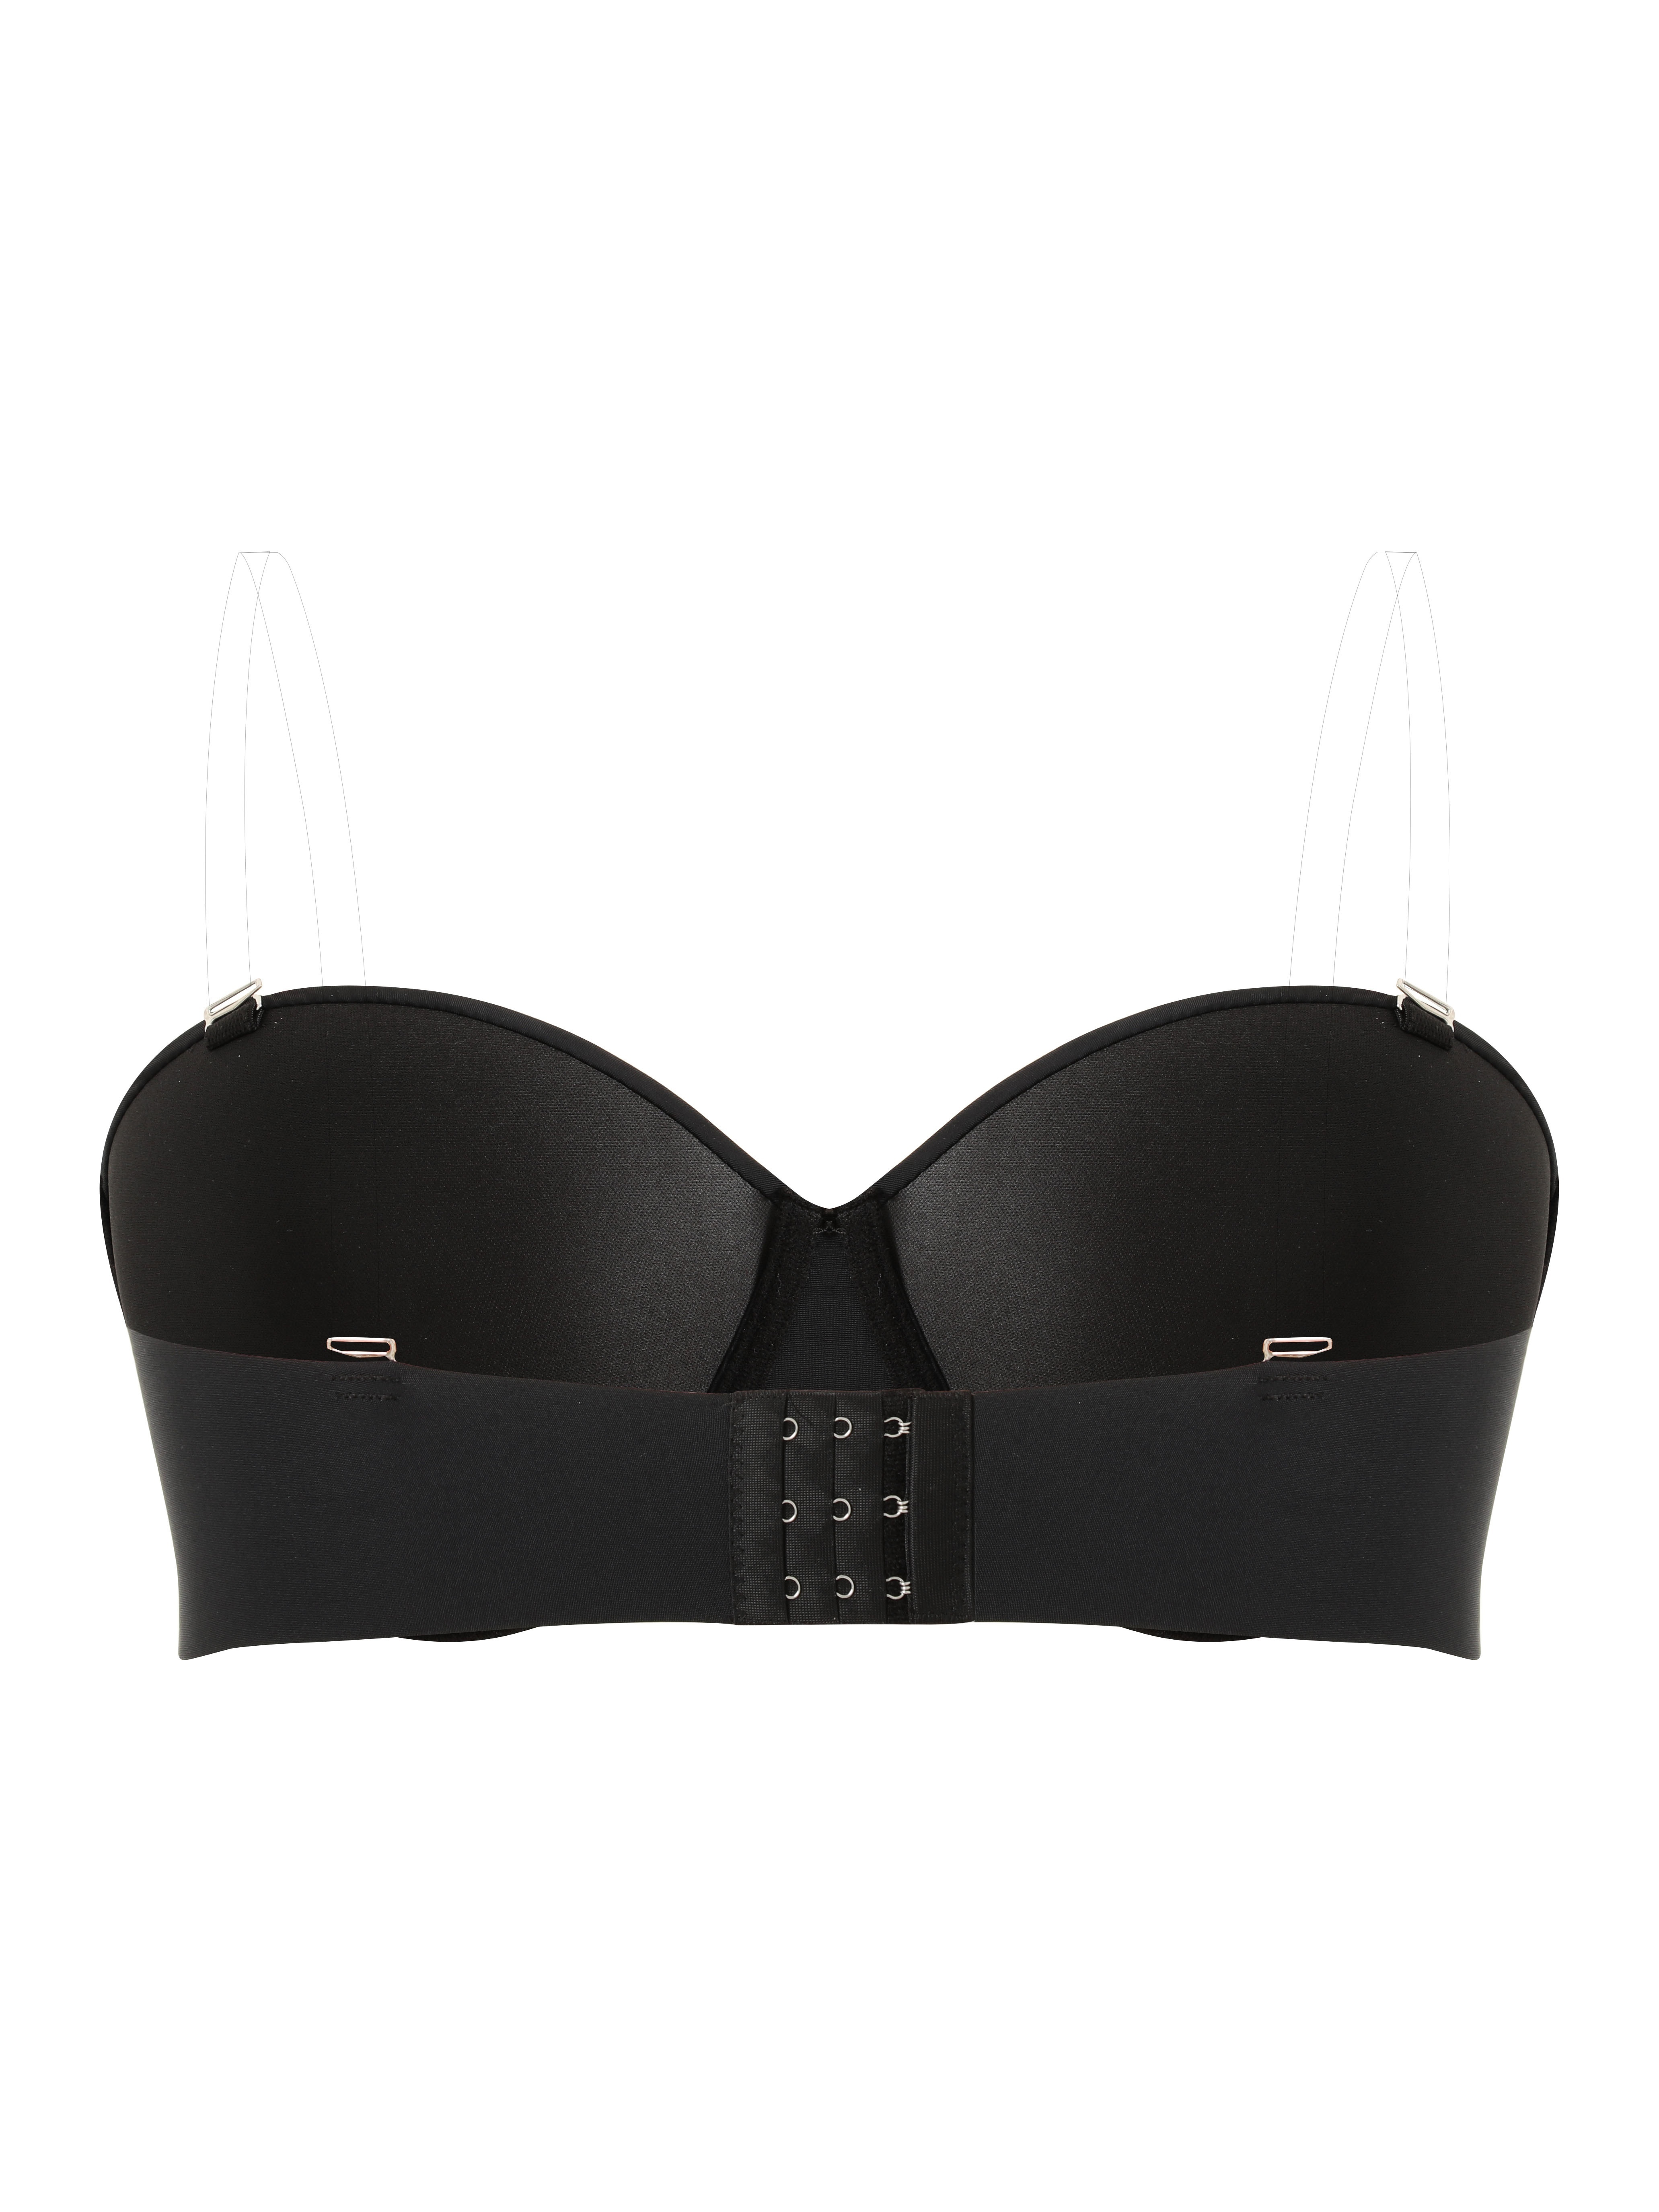 Buy Calvin Klein Underwear Women Black Adjustable Strap Solid Bra 